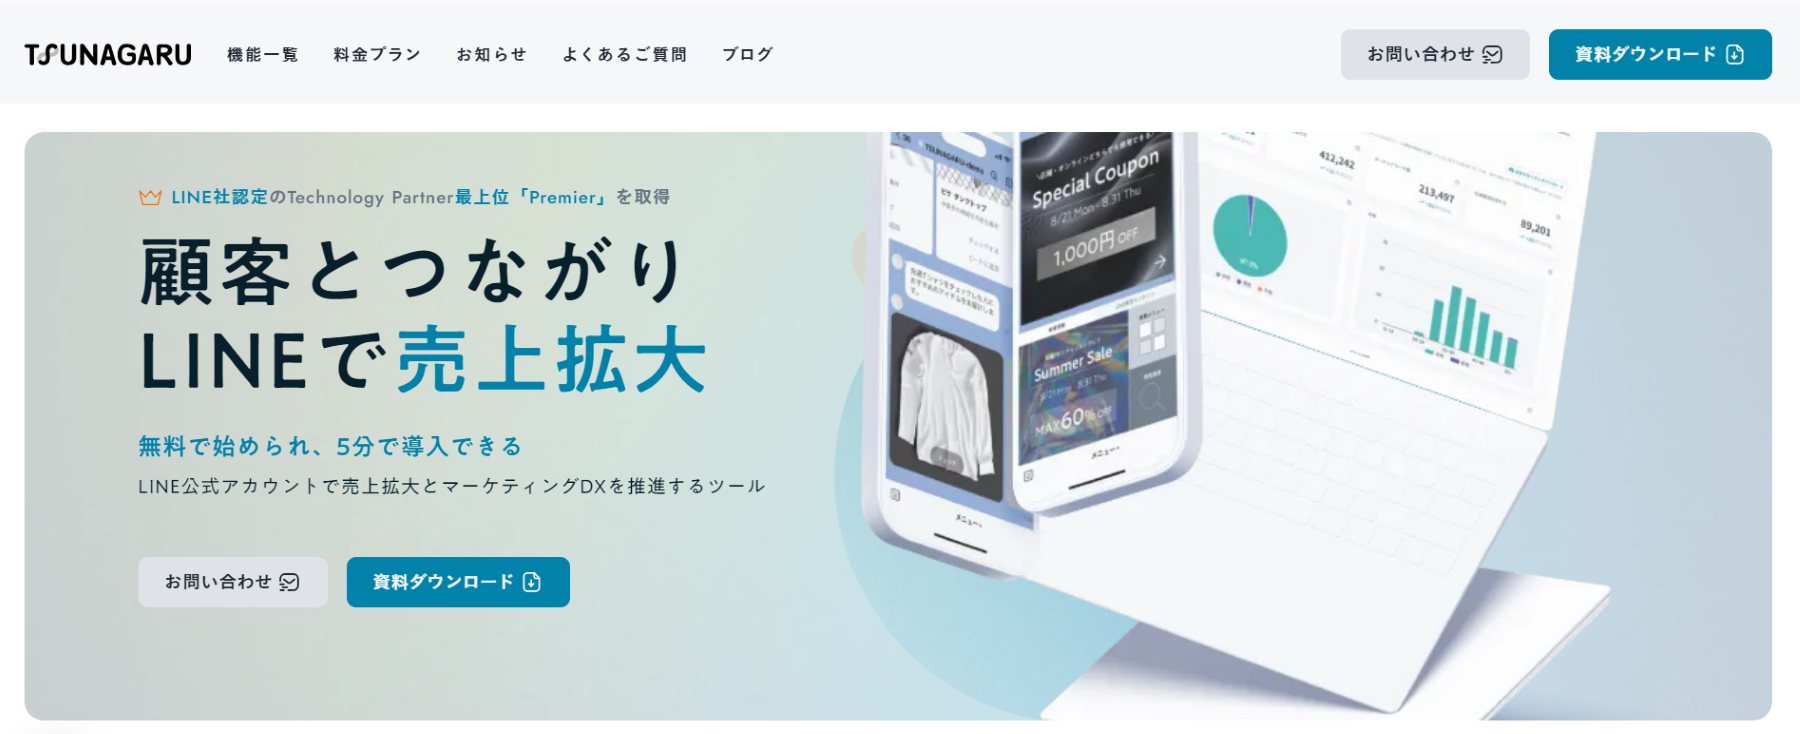 TSUNAGARU公式WEBサイト